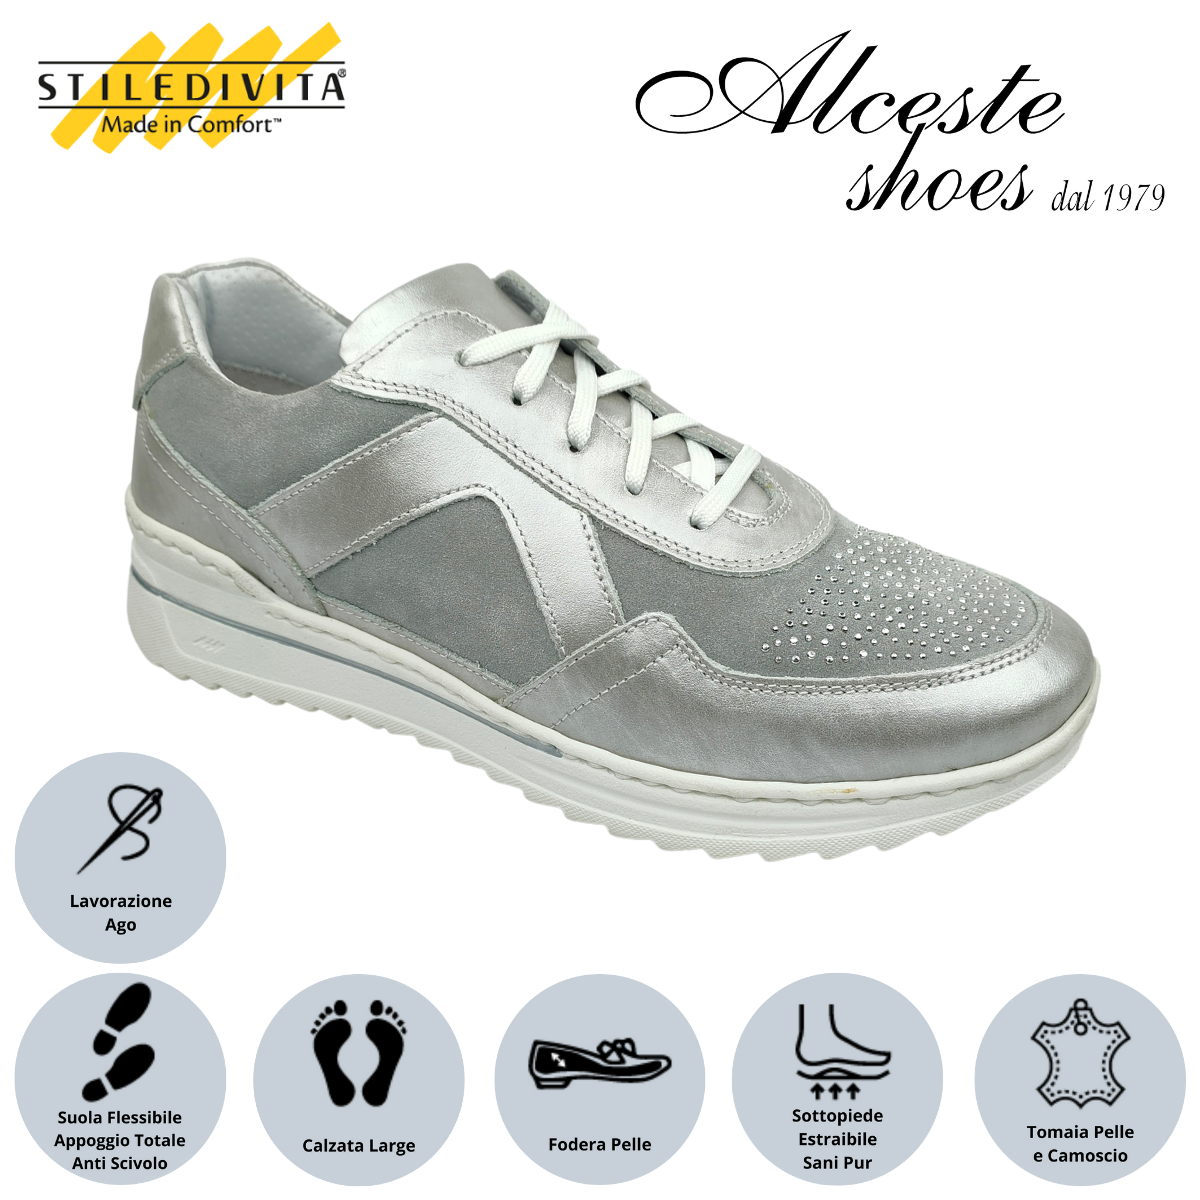 Sneakers Lacci Donna Stiledivita Art. 7377 Pelle Argento e Camoscio Perla Alceste Shoes 32 1